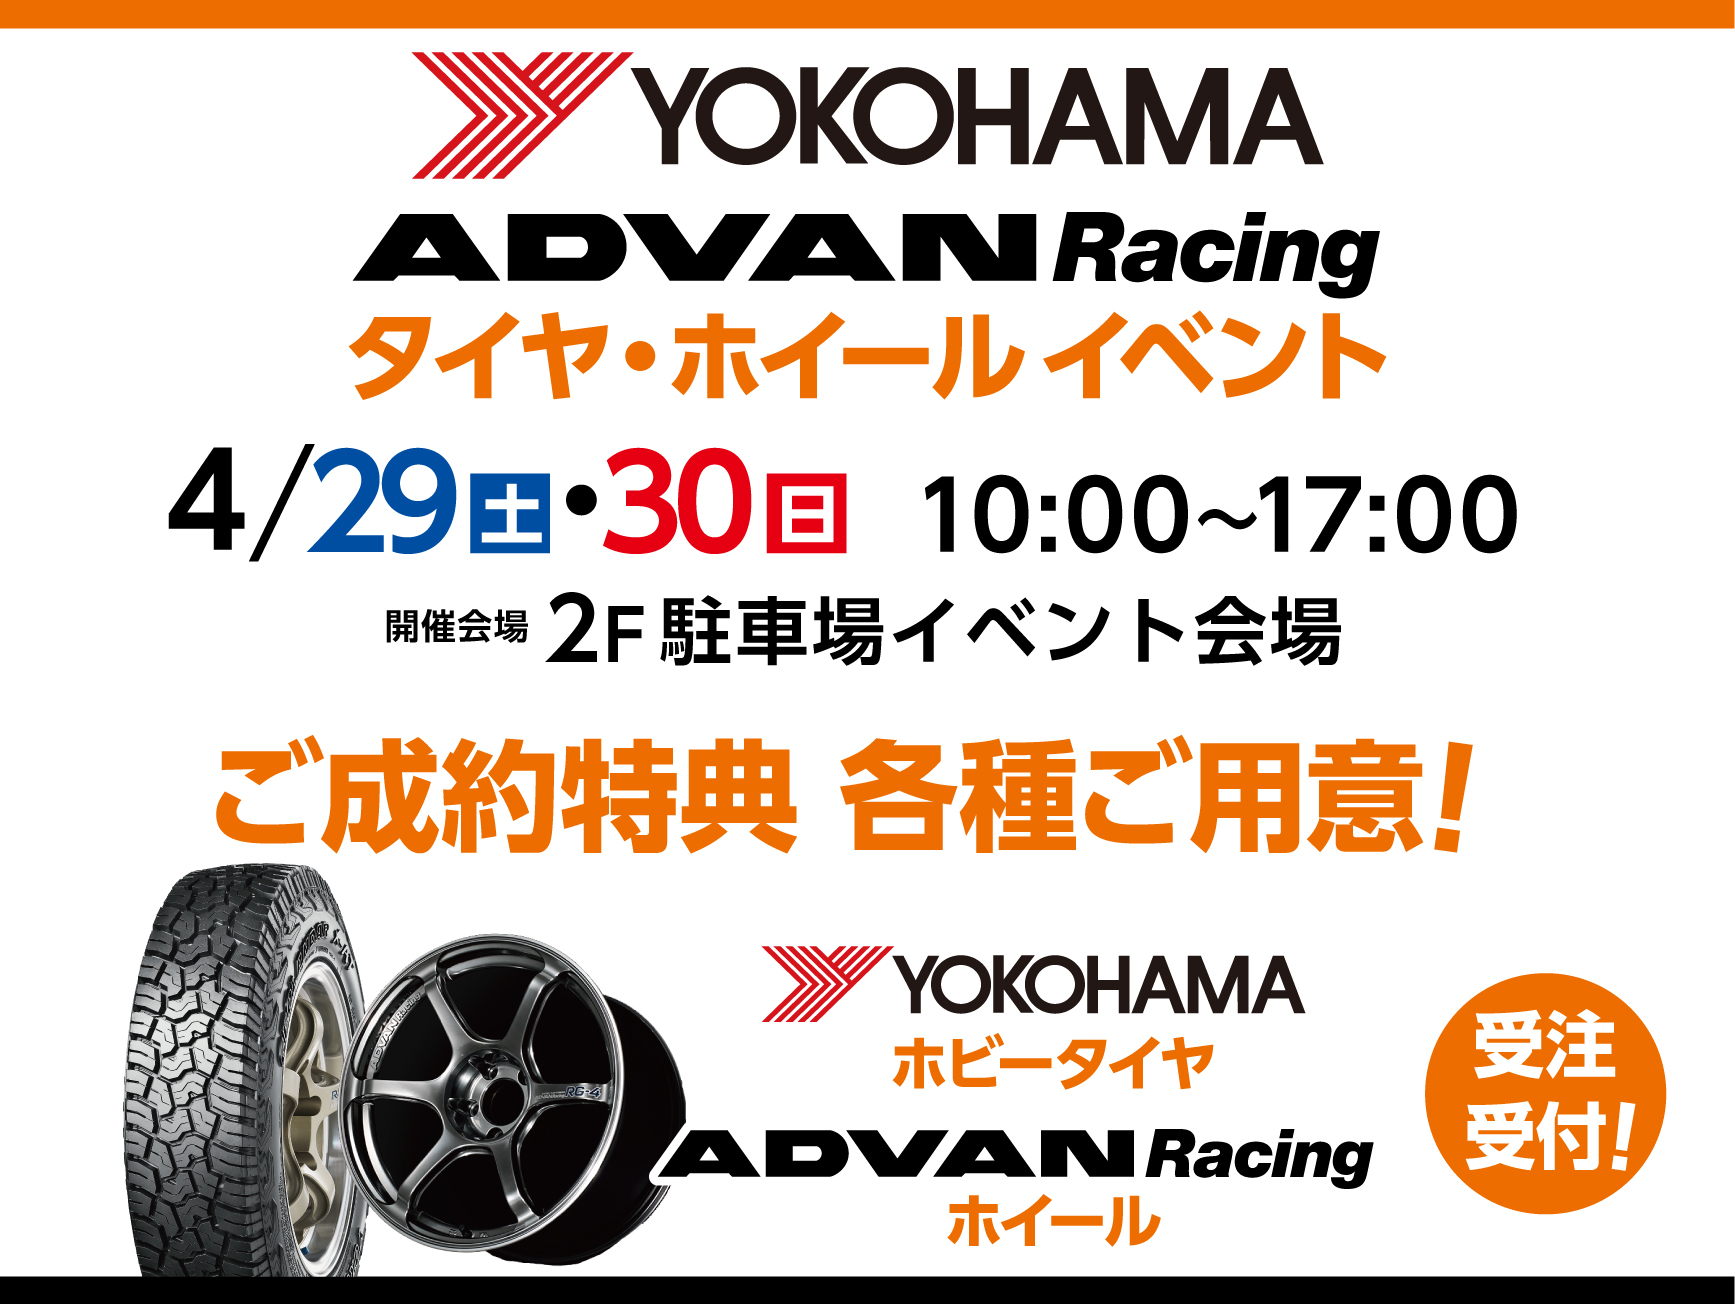 4/29(土)30日(日) ADVANレーシングイベント